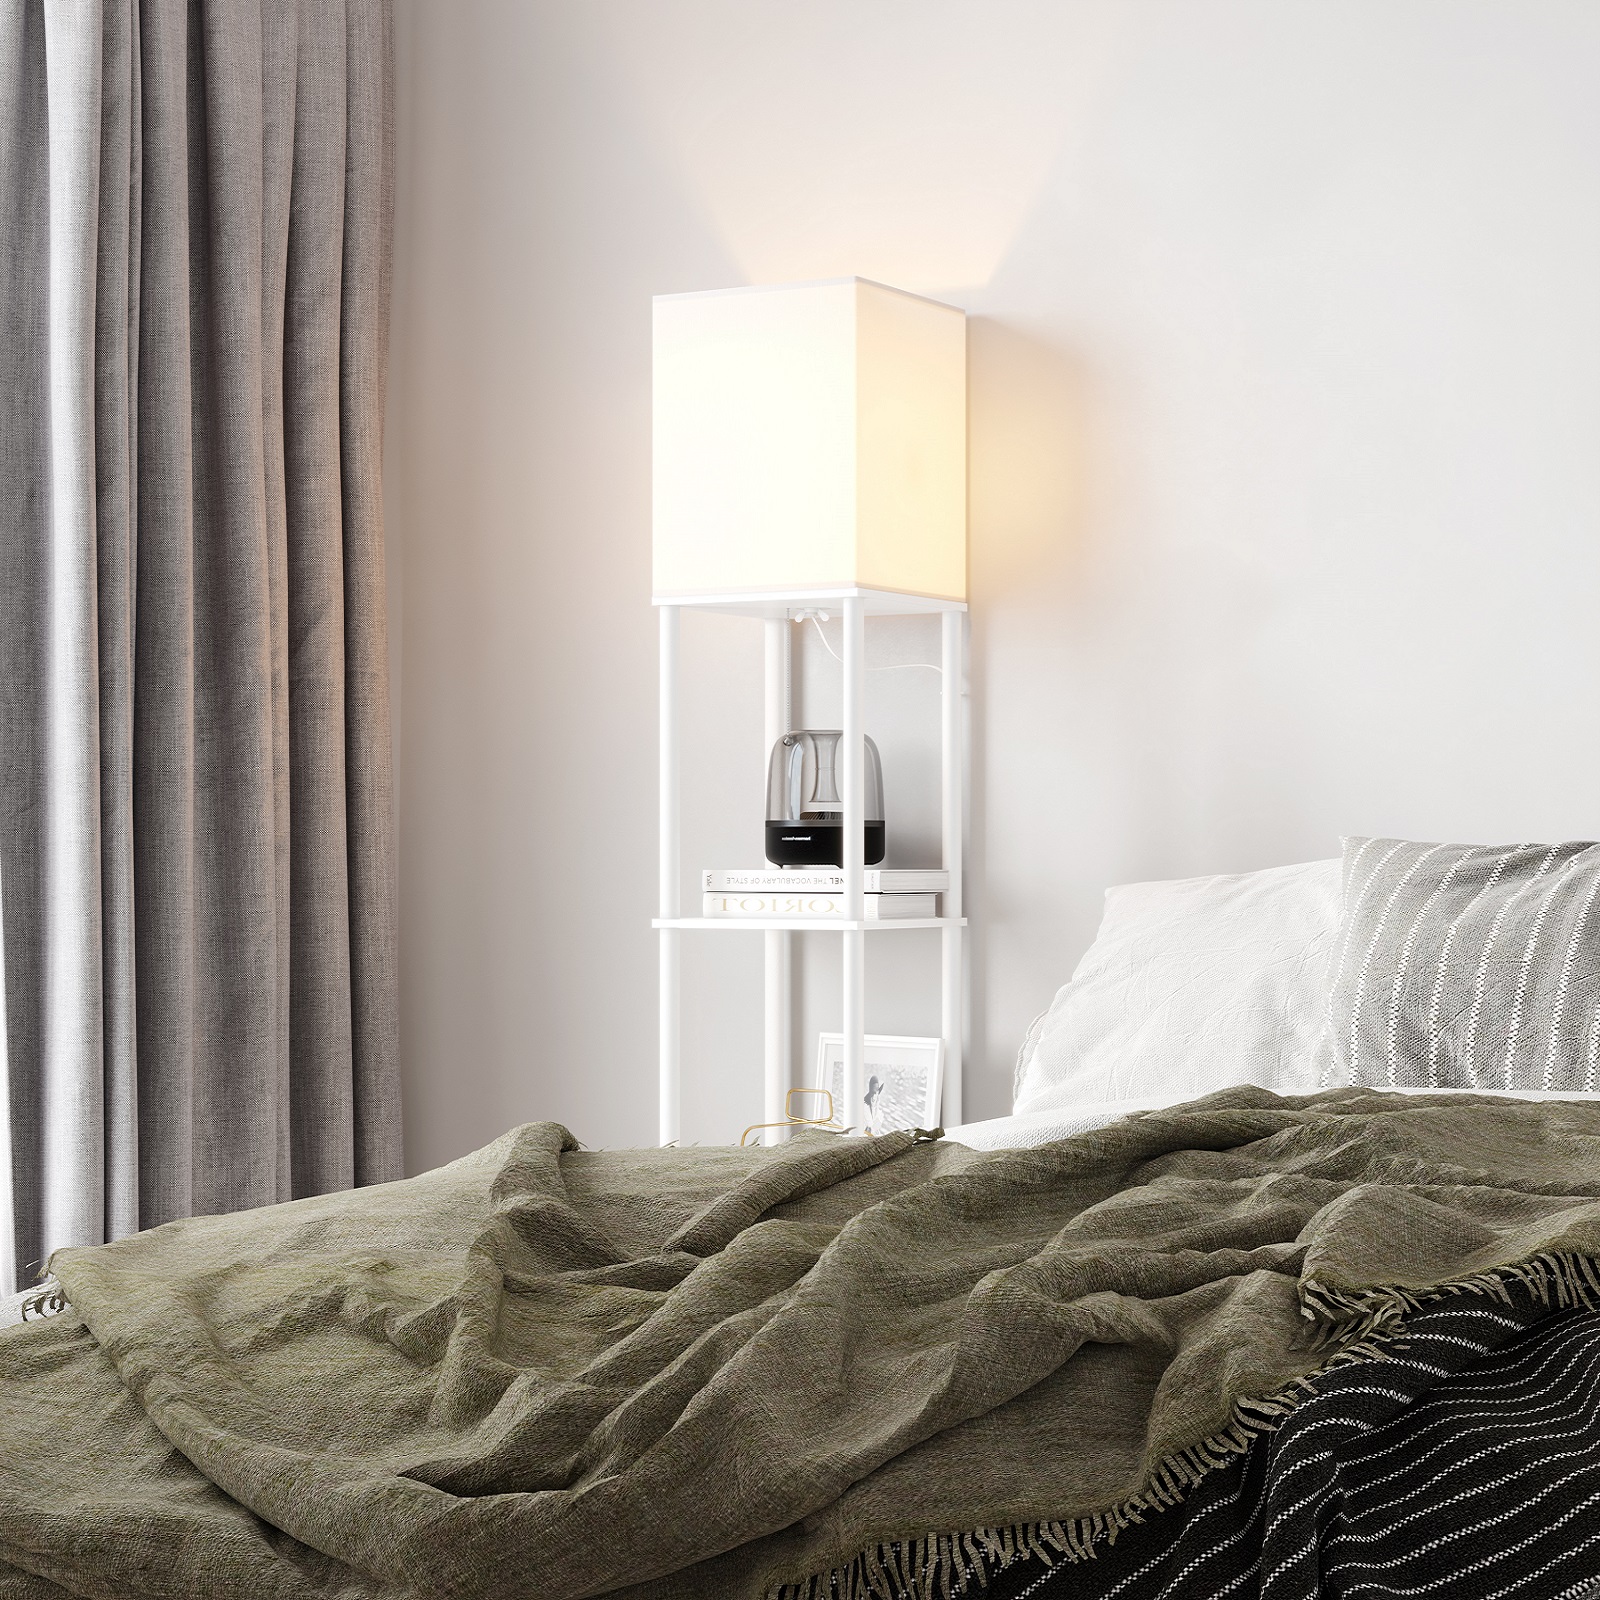 SUNMORY Modern Iron Shelf Floor Lamp for Living Room, White - image 5 of 10